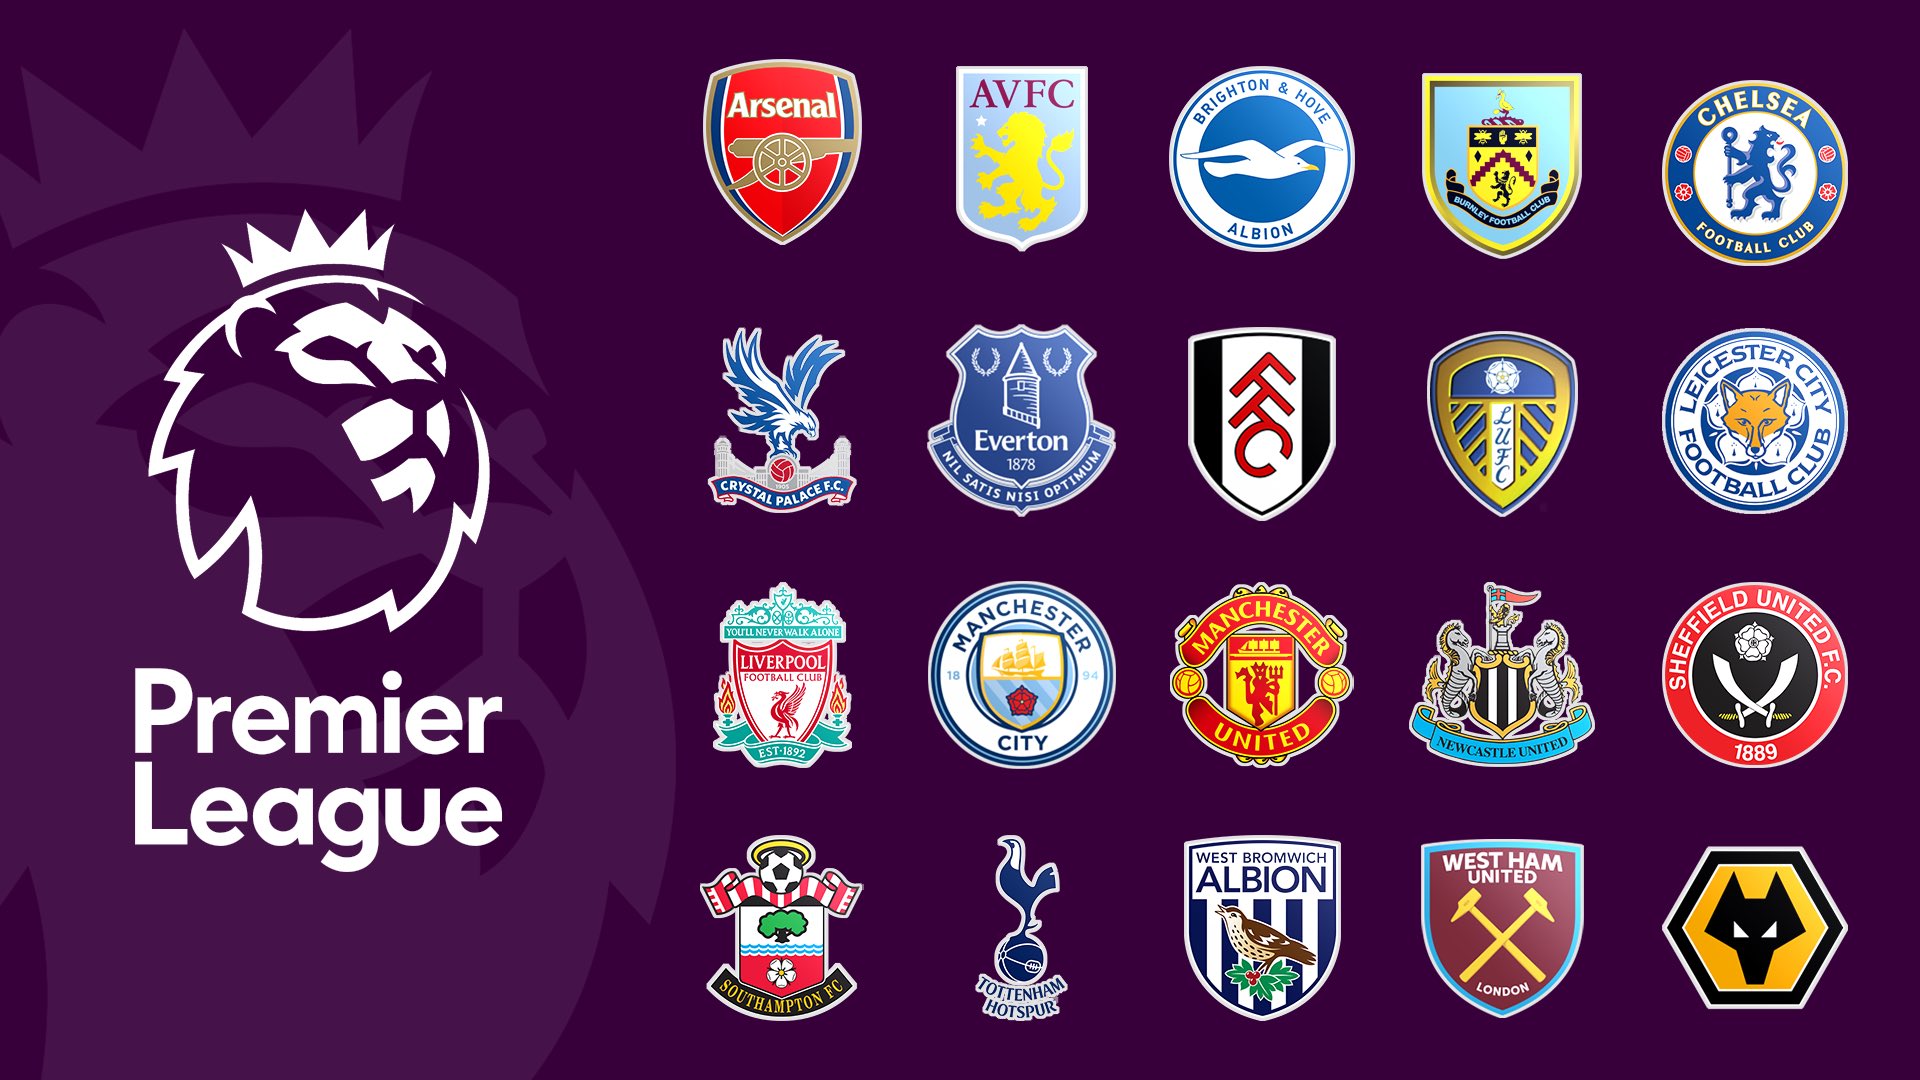 2020/21 Premier League fixtures released - Premier League Central